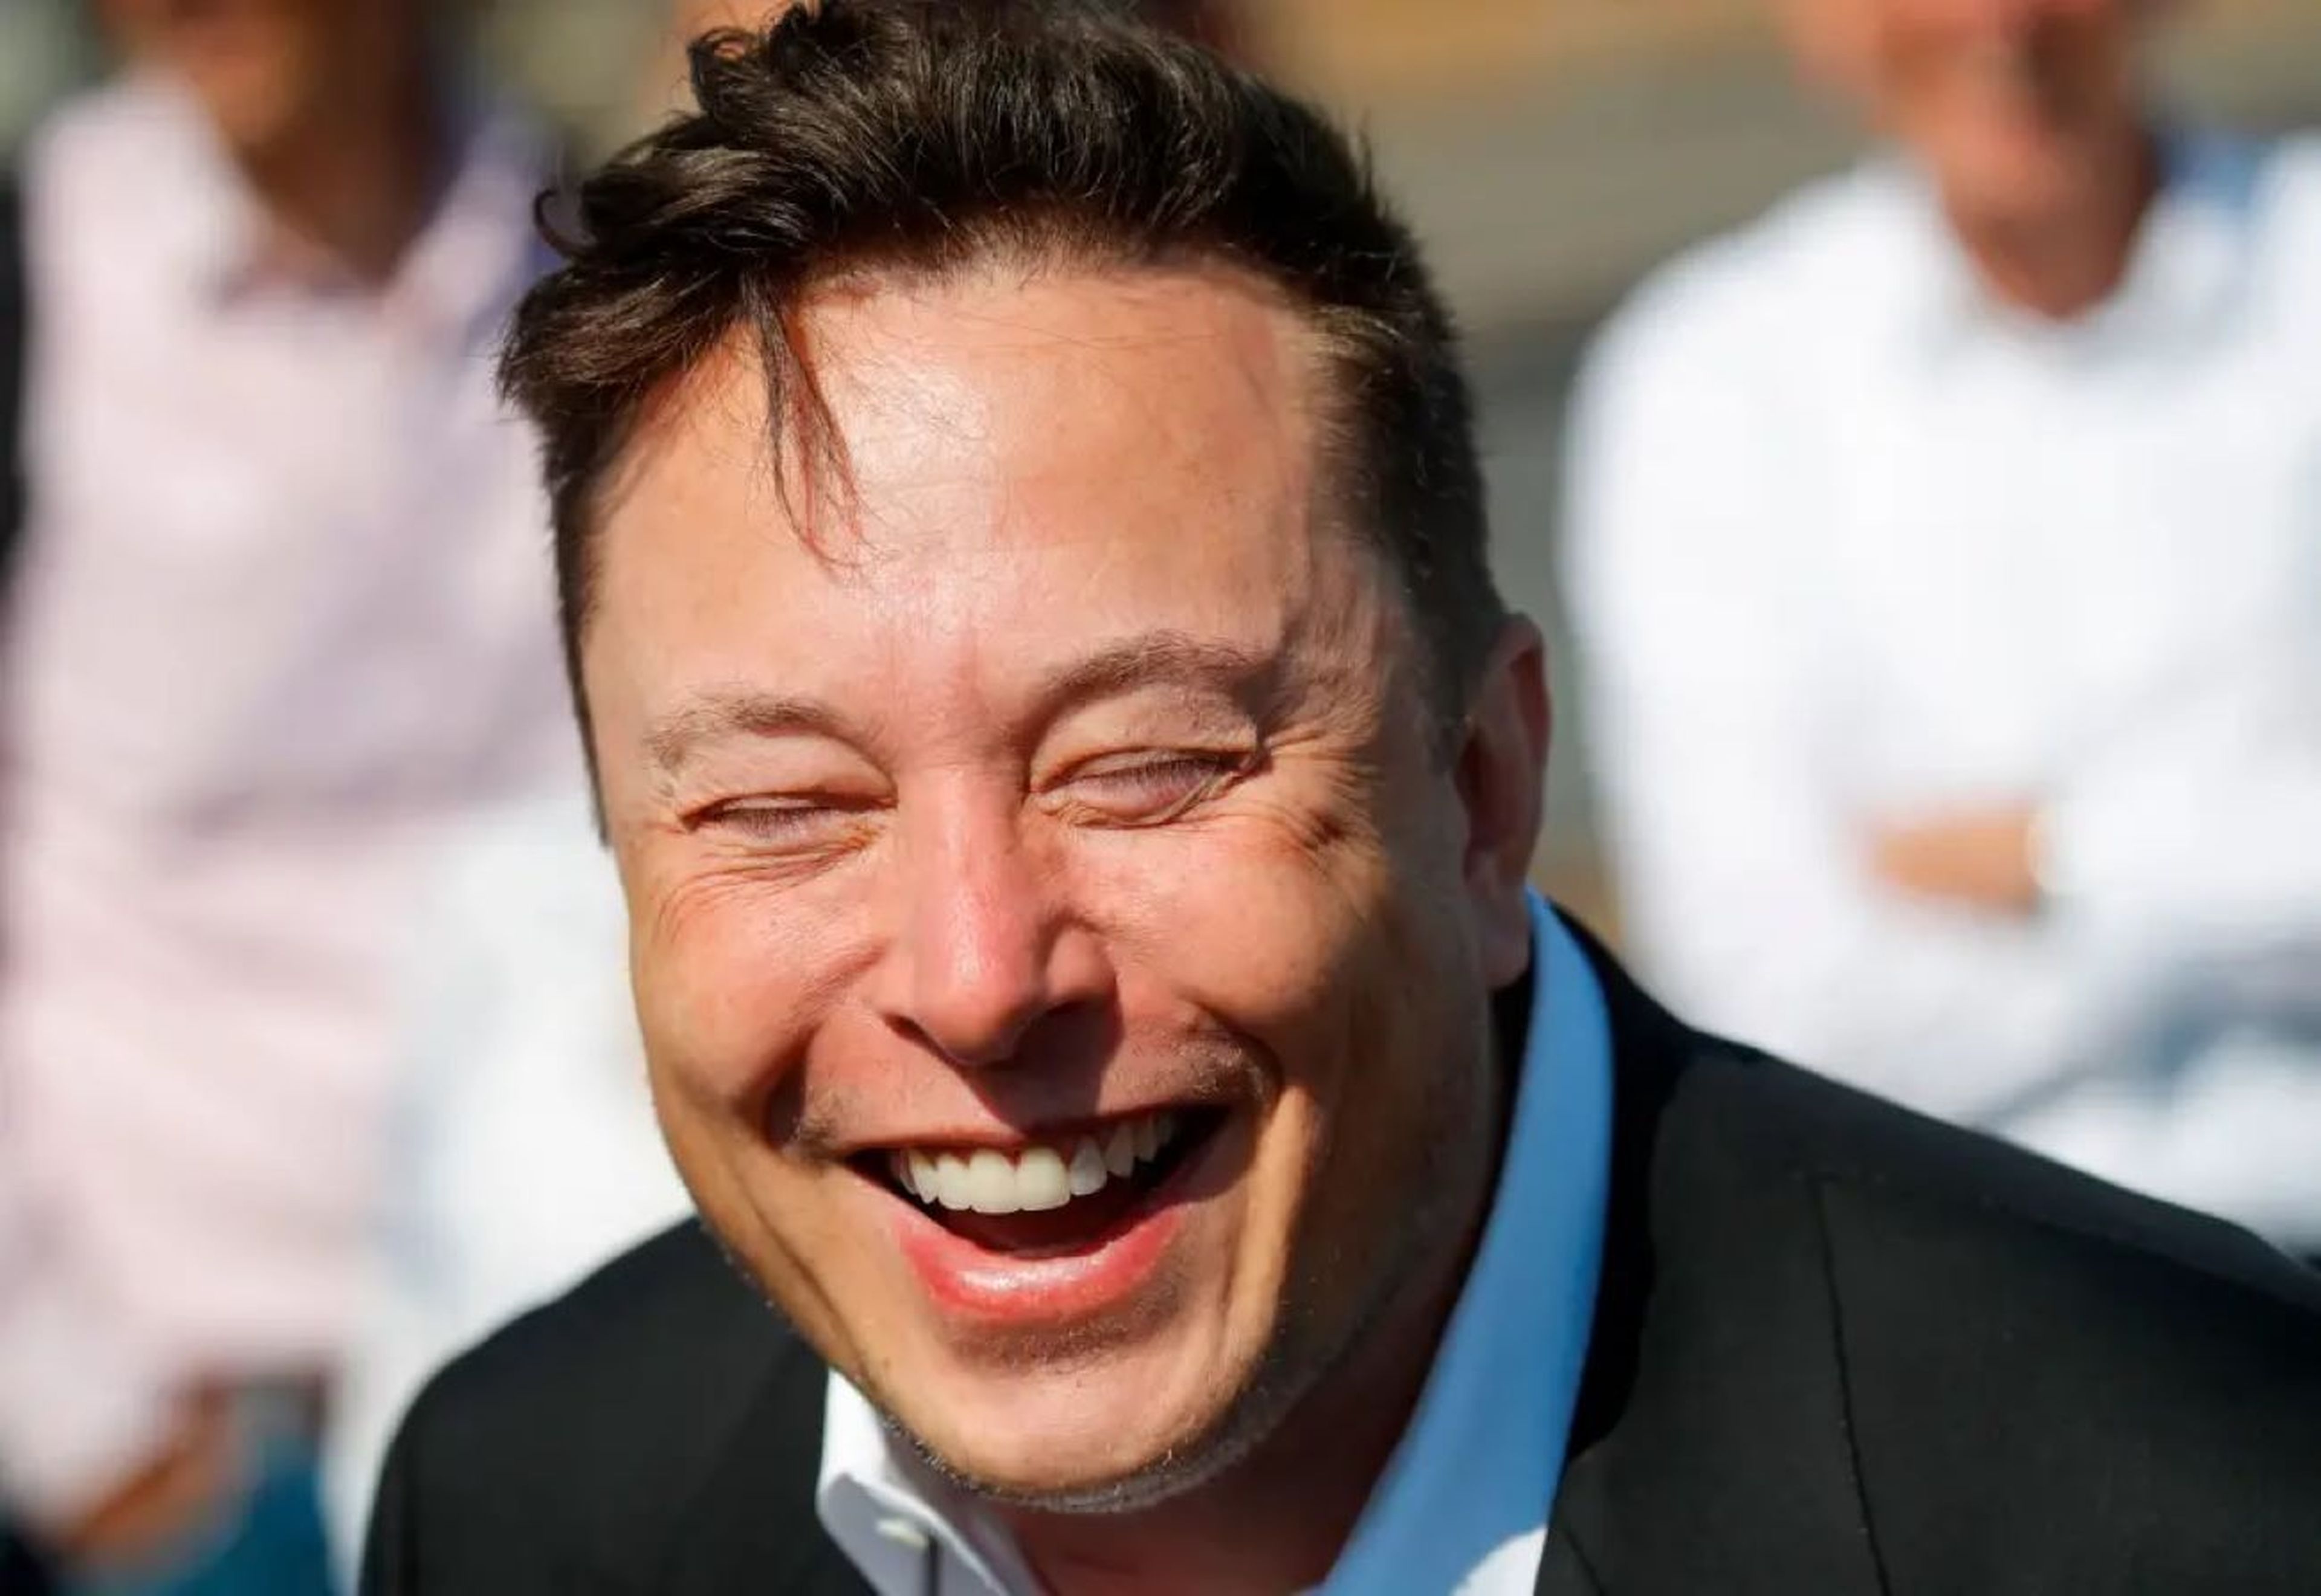 Elon Musk riéndose